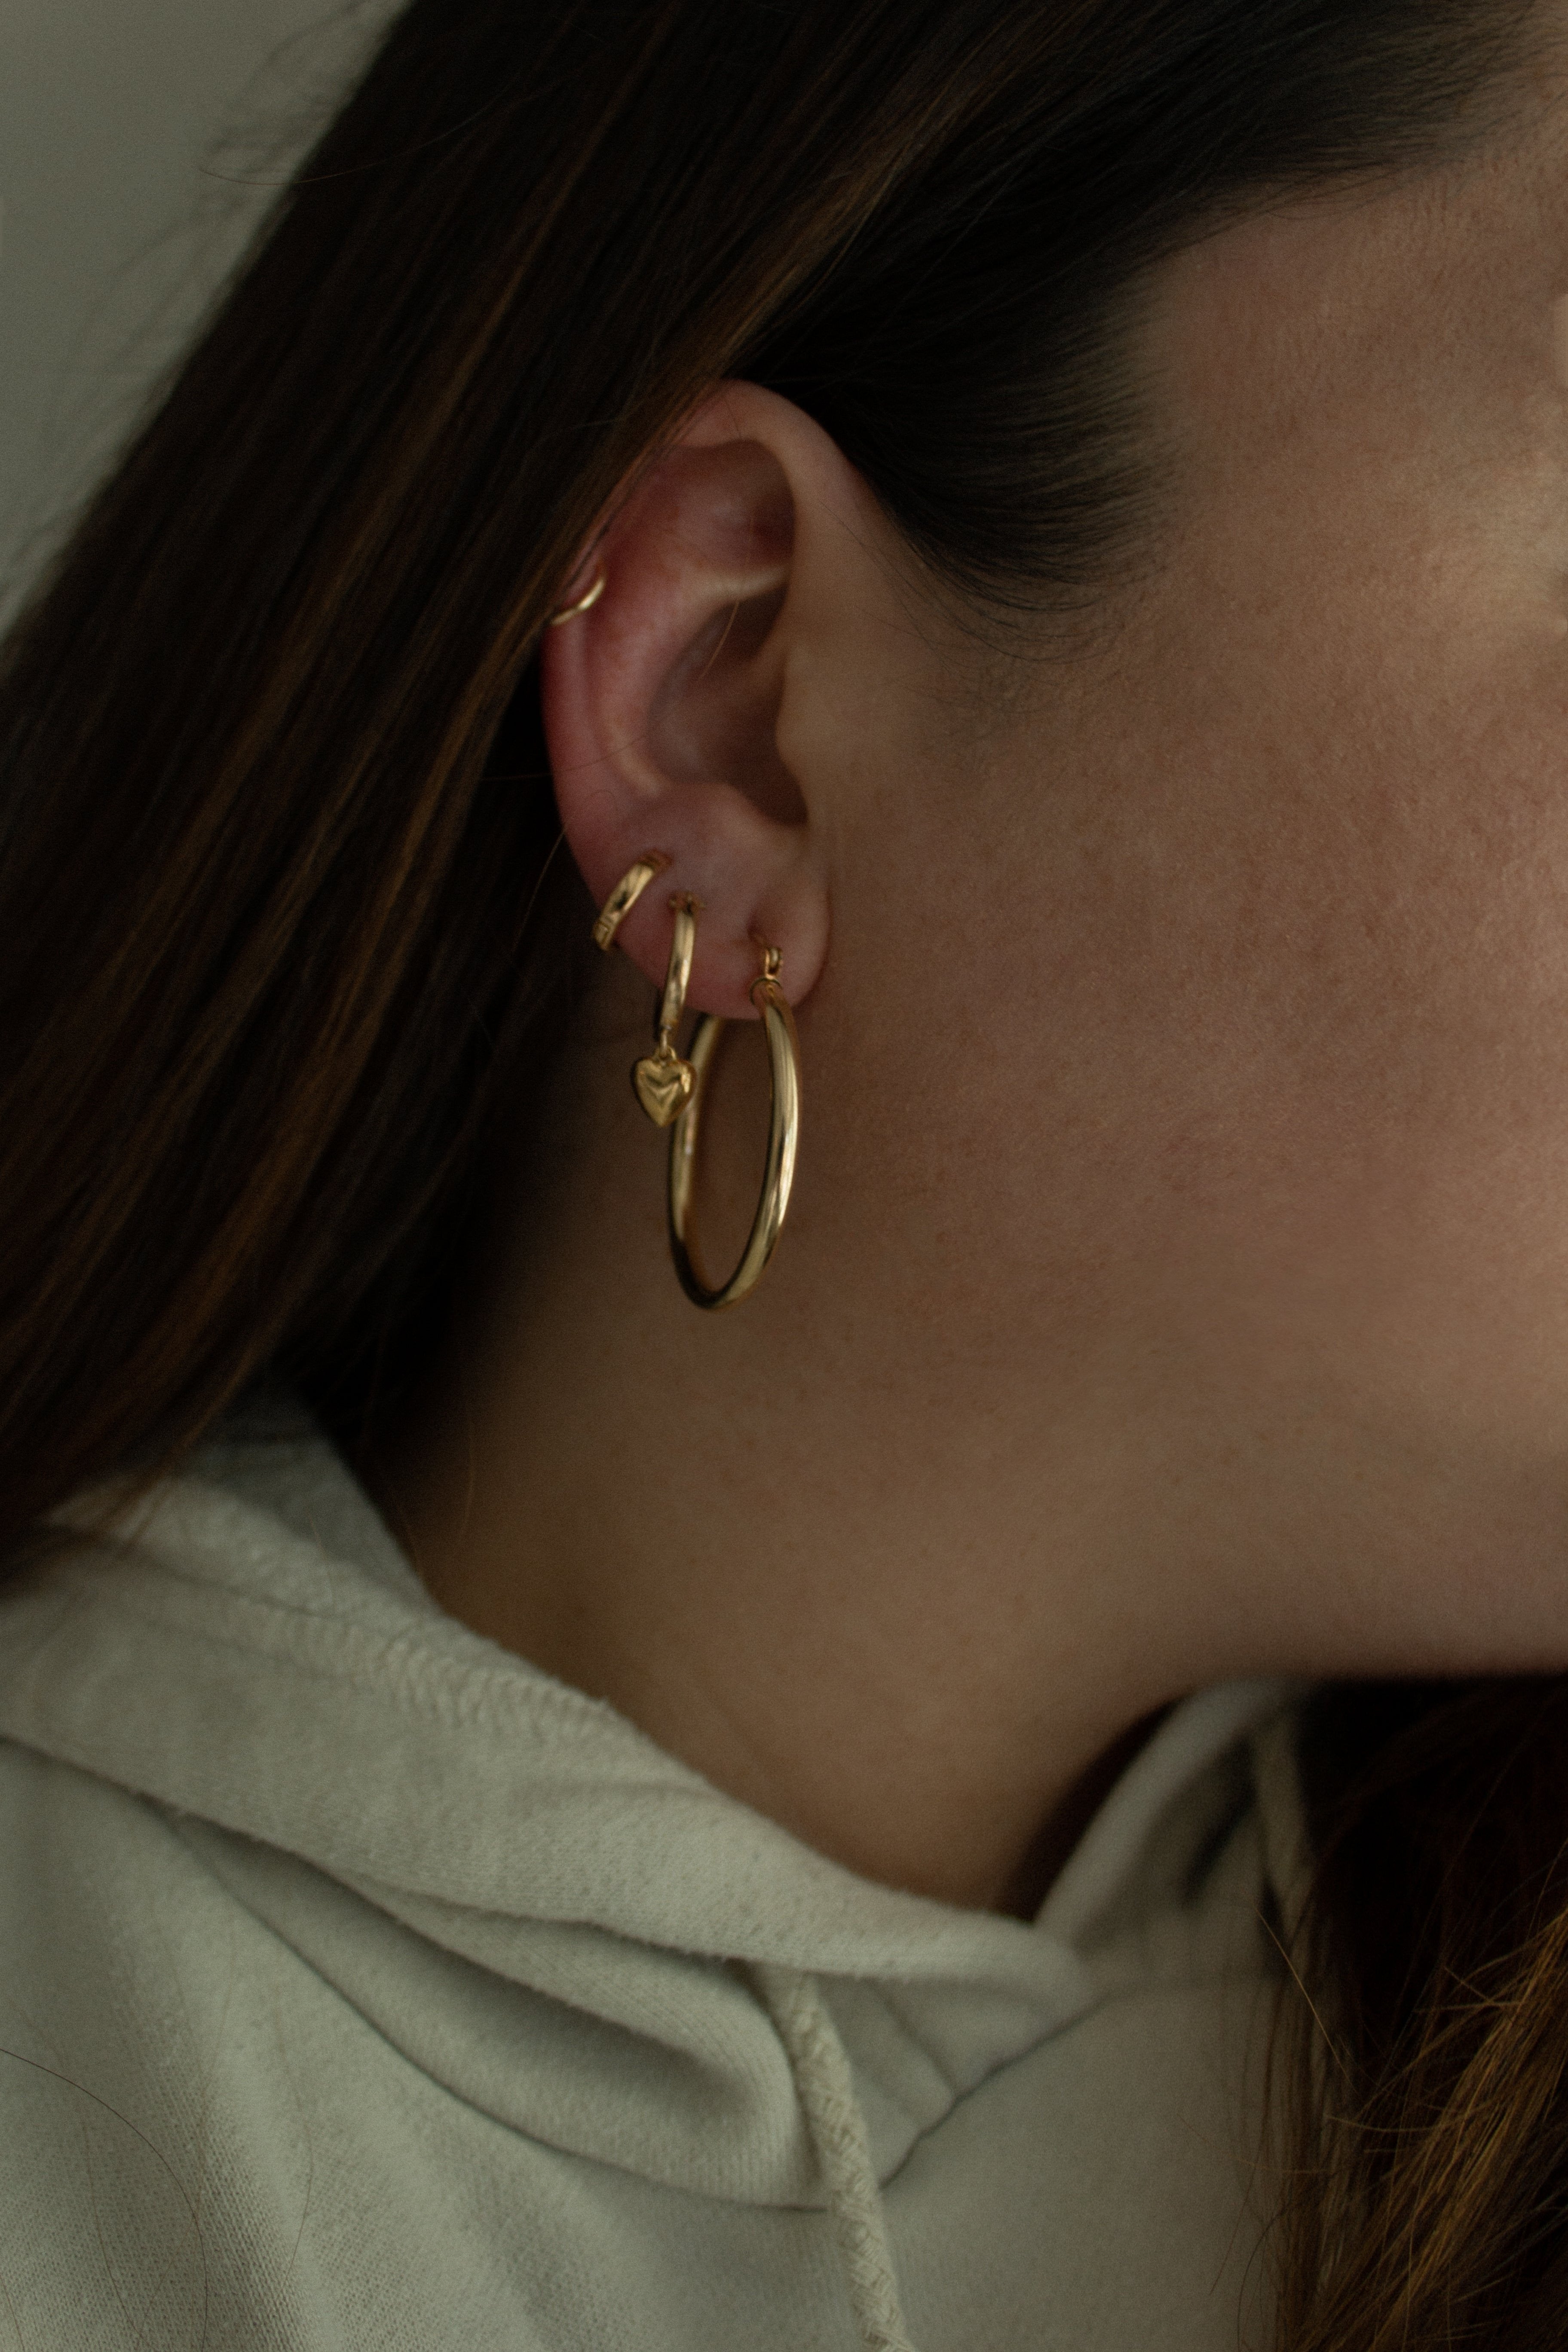 Lindsay earrings